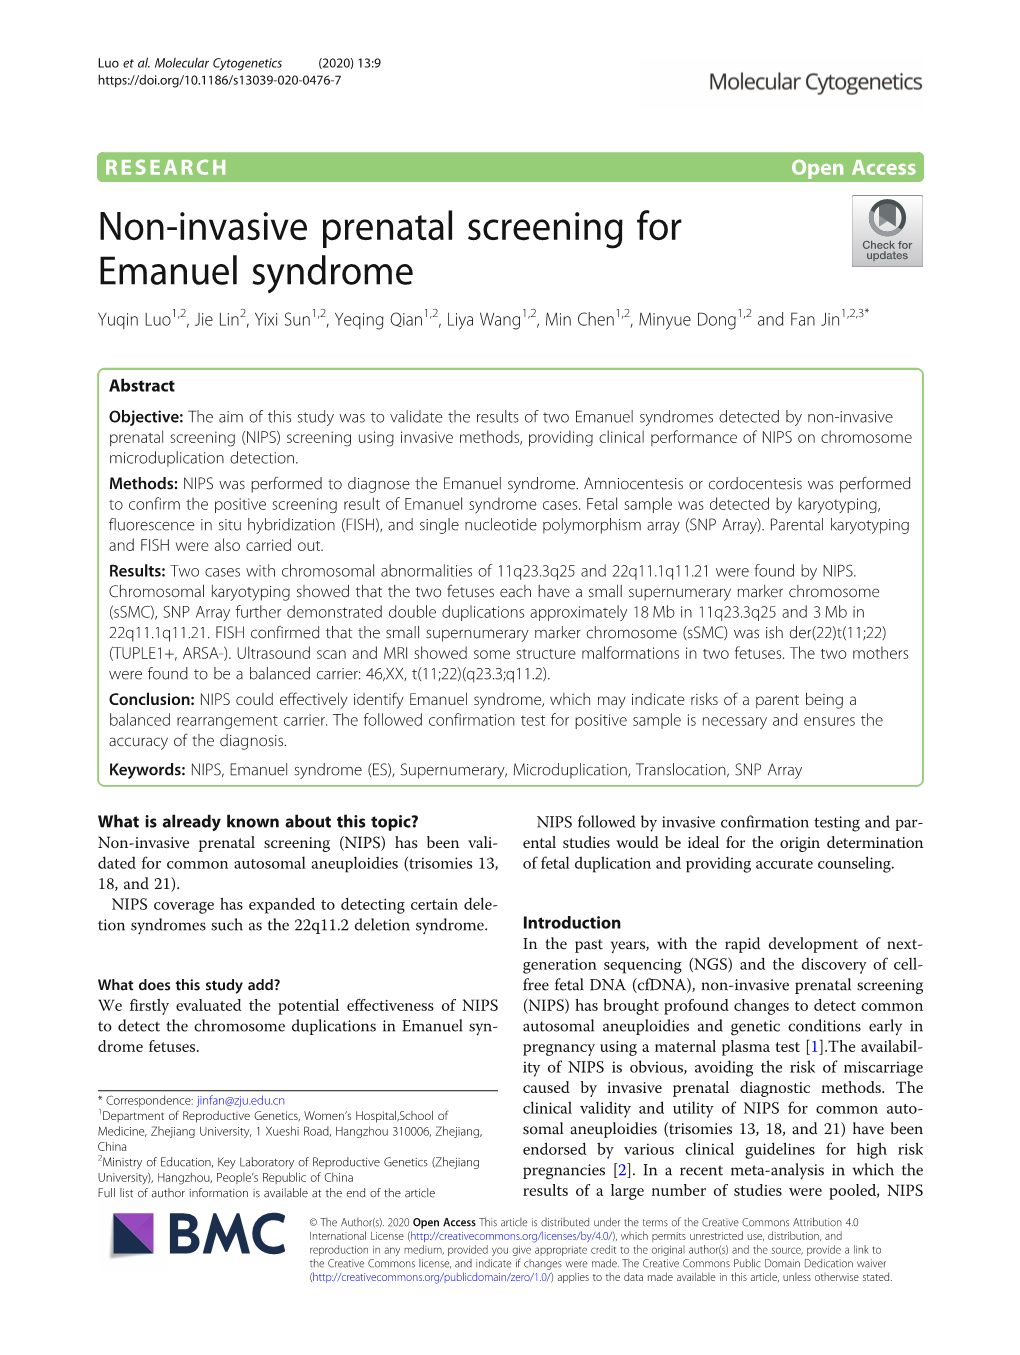 Non-Invasive Prenatal Screening for Emanuel Syndrome Yuqin Luo1,2, Jie Lin2, Yixi Sun1,2, Yeqing Qian1,2, Liya Wang1,2, Min Chen1,2, Minyue Dong1,2 and Fan Jin1,2,3*